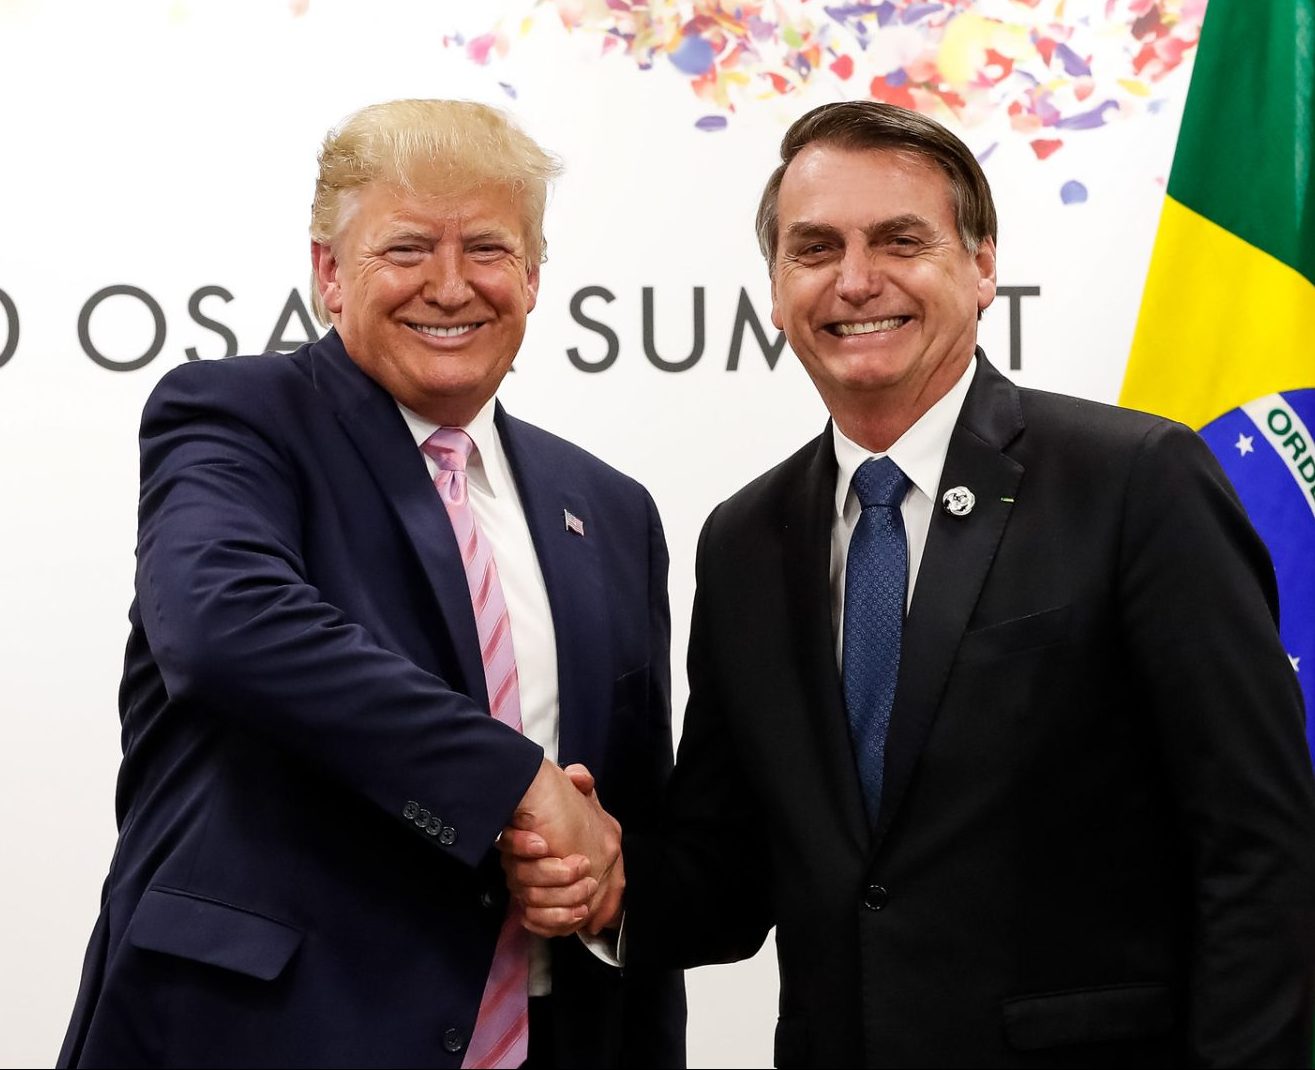 Bolsonaro e Trump podem se encontrar em evento conservador nos EUA - Foto: Alan Santos/PR